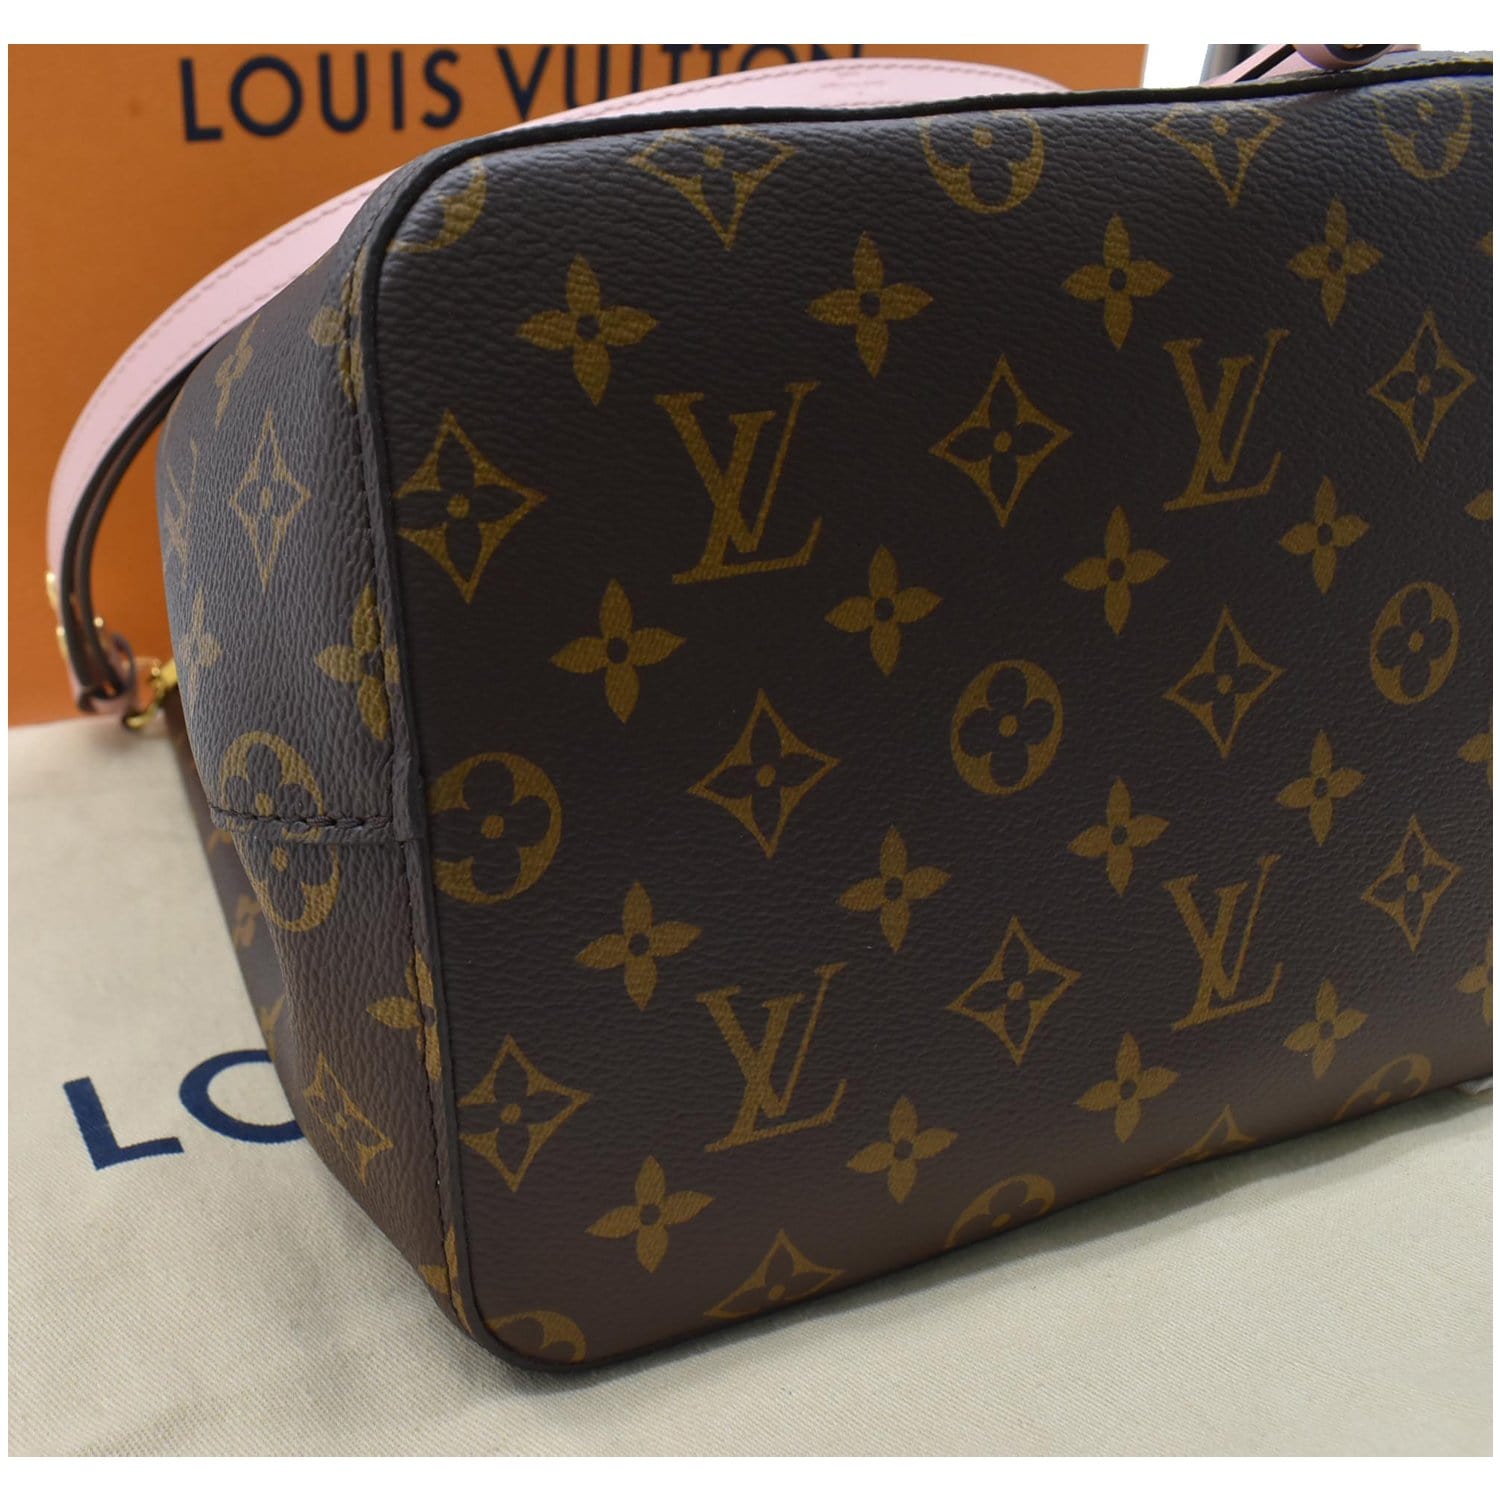 Louis Vuitton Damier Ebene Canvas and Leather NeoNoe Bag Louis Vuitton